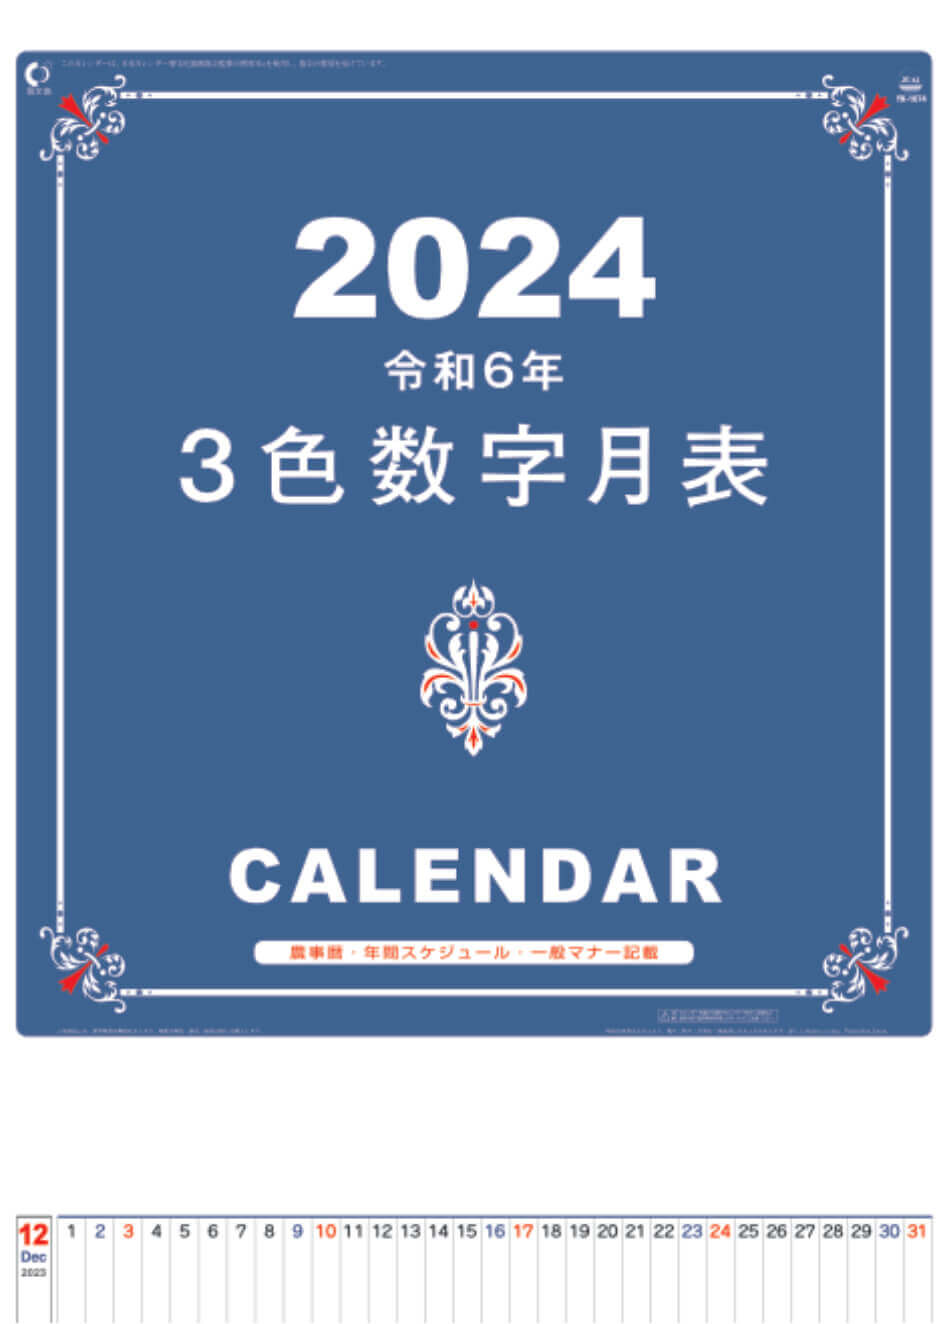 表紙 A2 3色数字月表 2024年カレンダーの画像